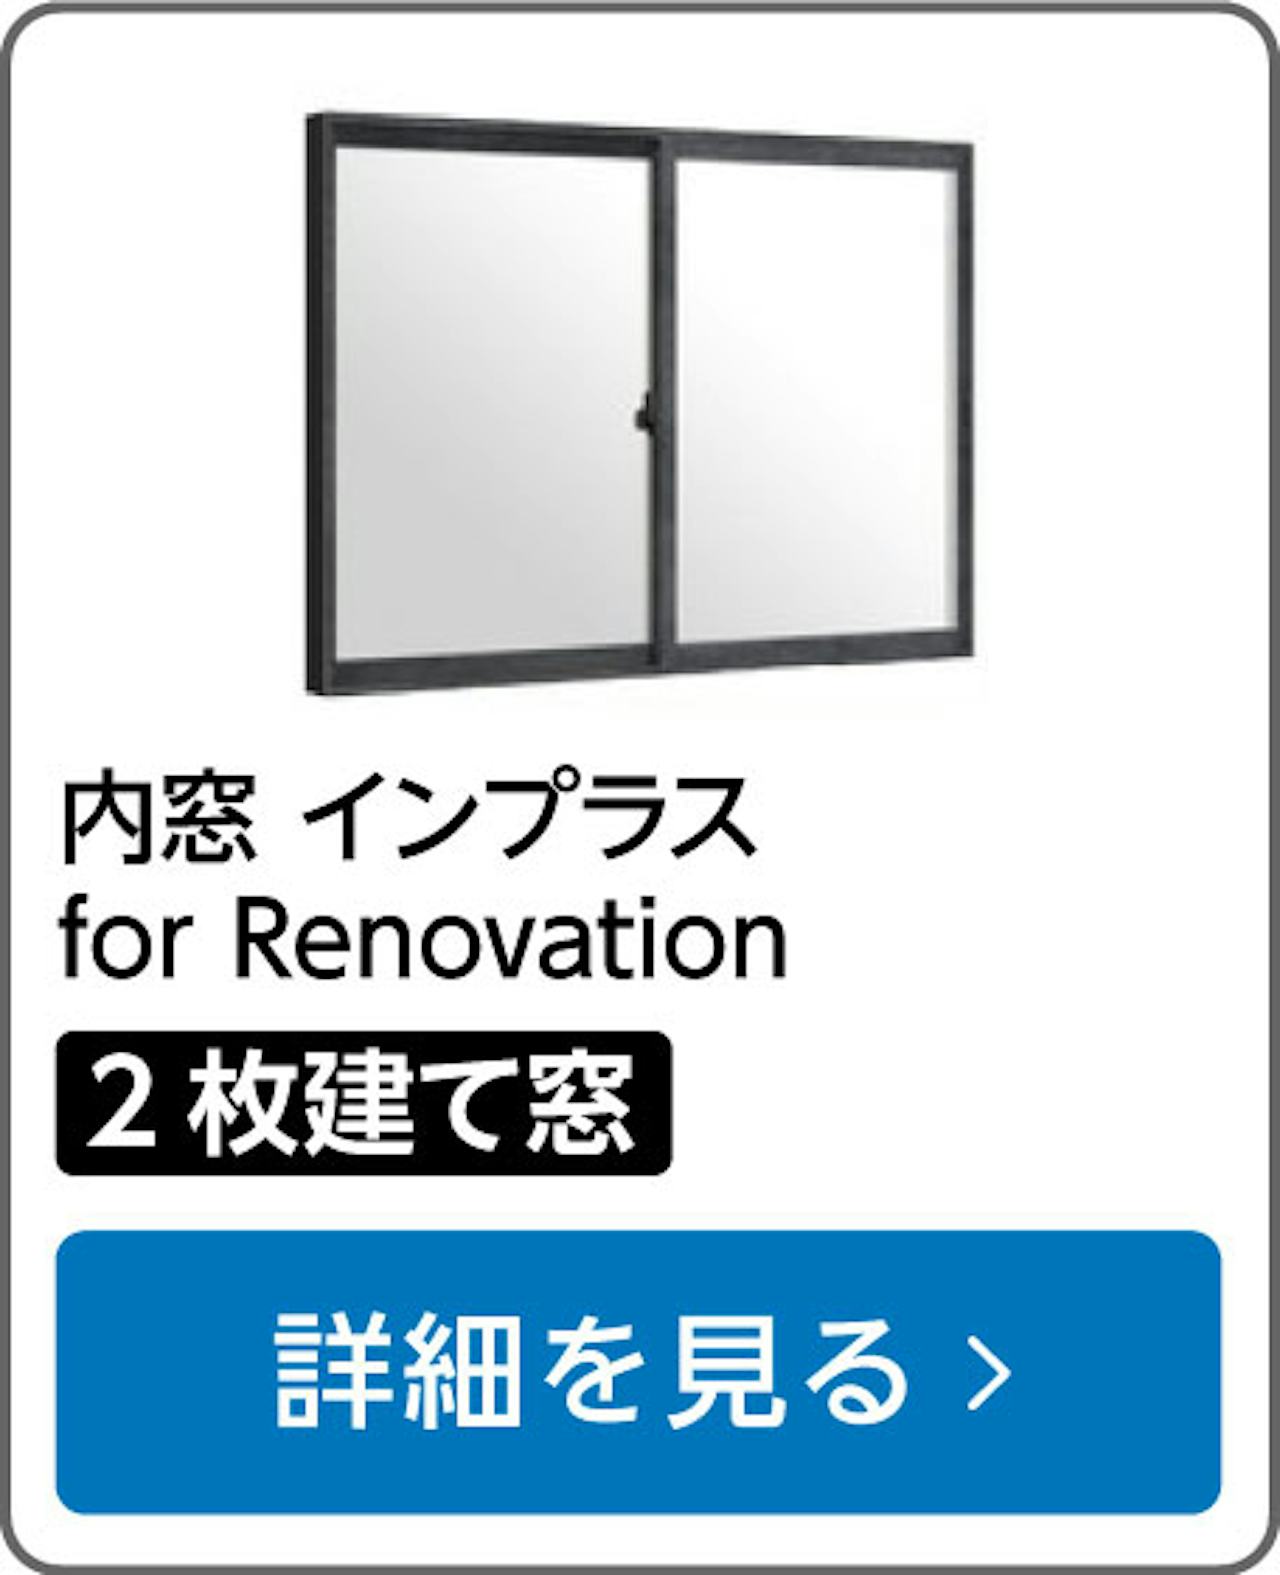 内窓インプラスfor Renovation(2枚建て窓)